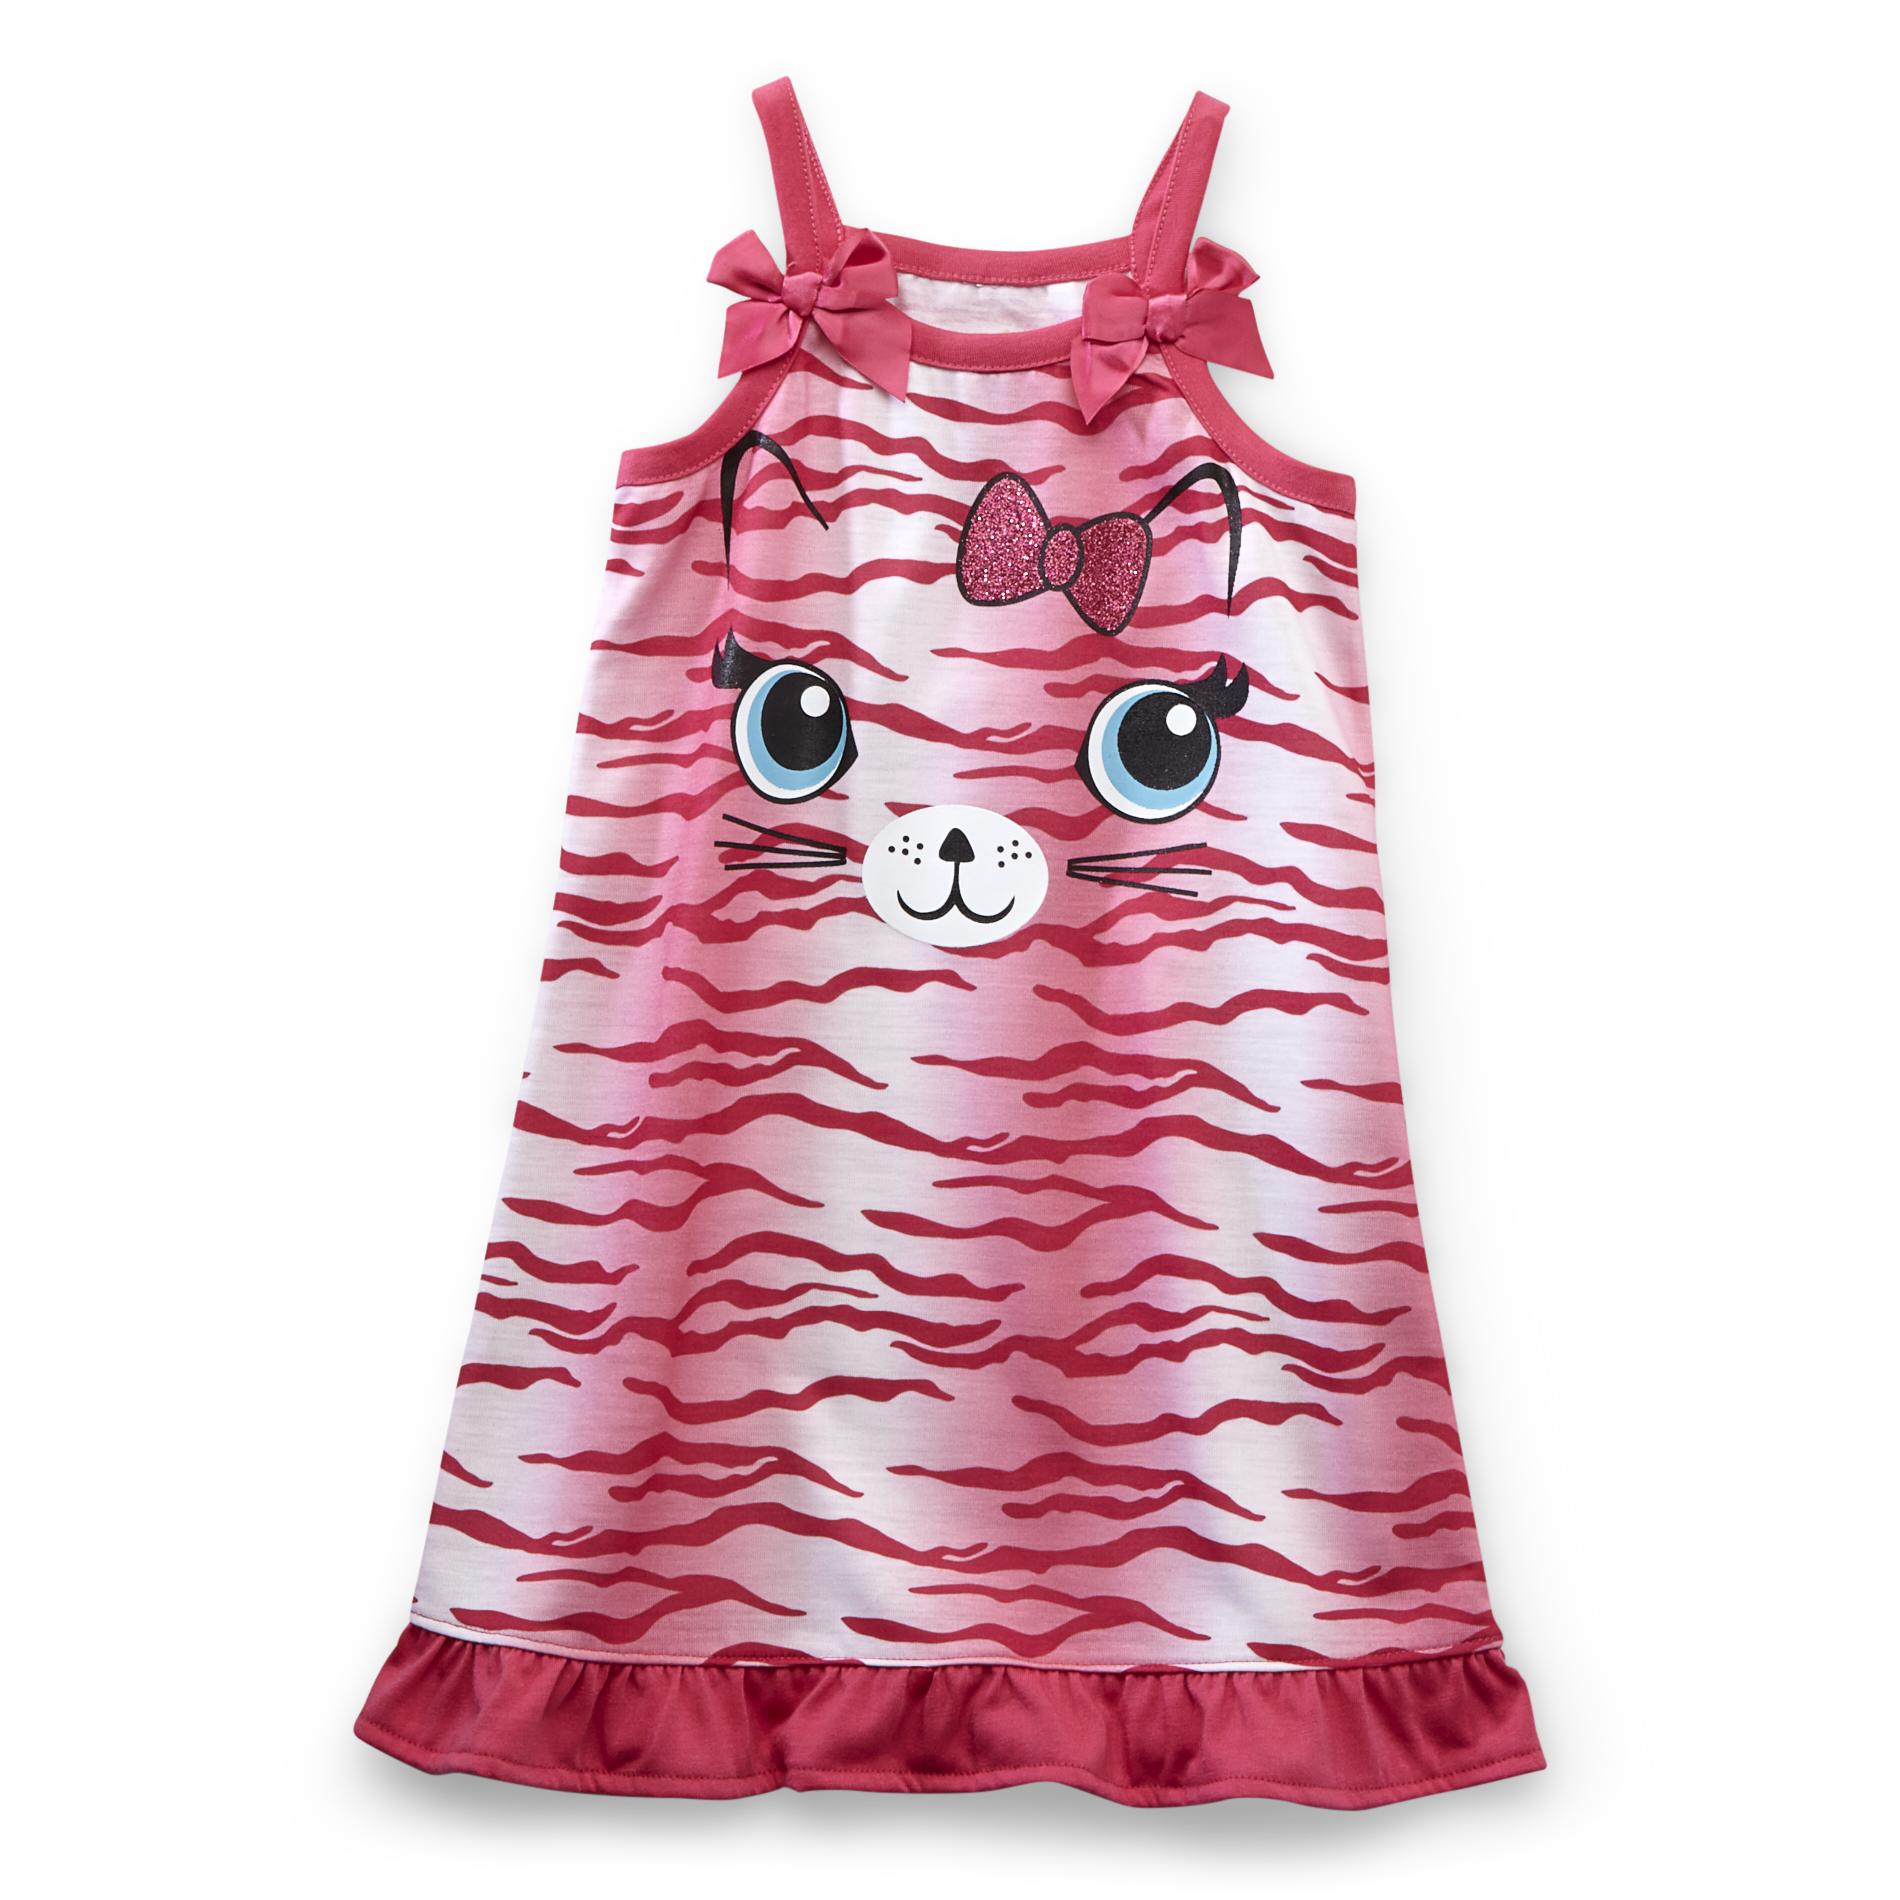 Joe Boxer Toddler Girl's Sleeveless Nightgown - Zebra-Striped Kitten